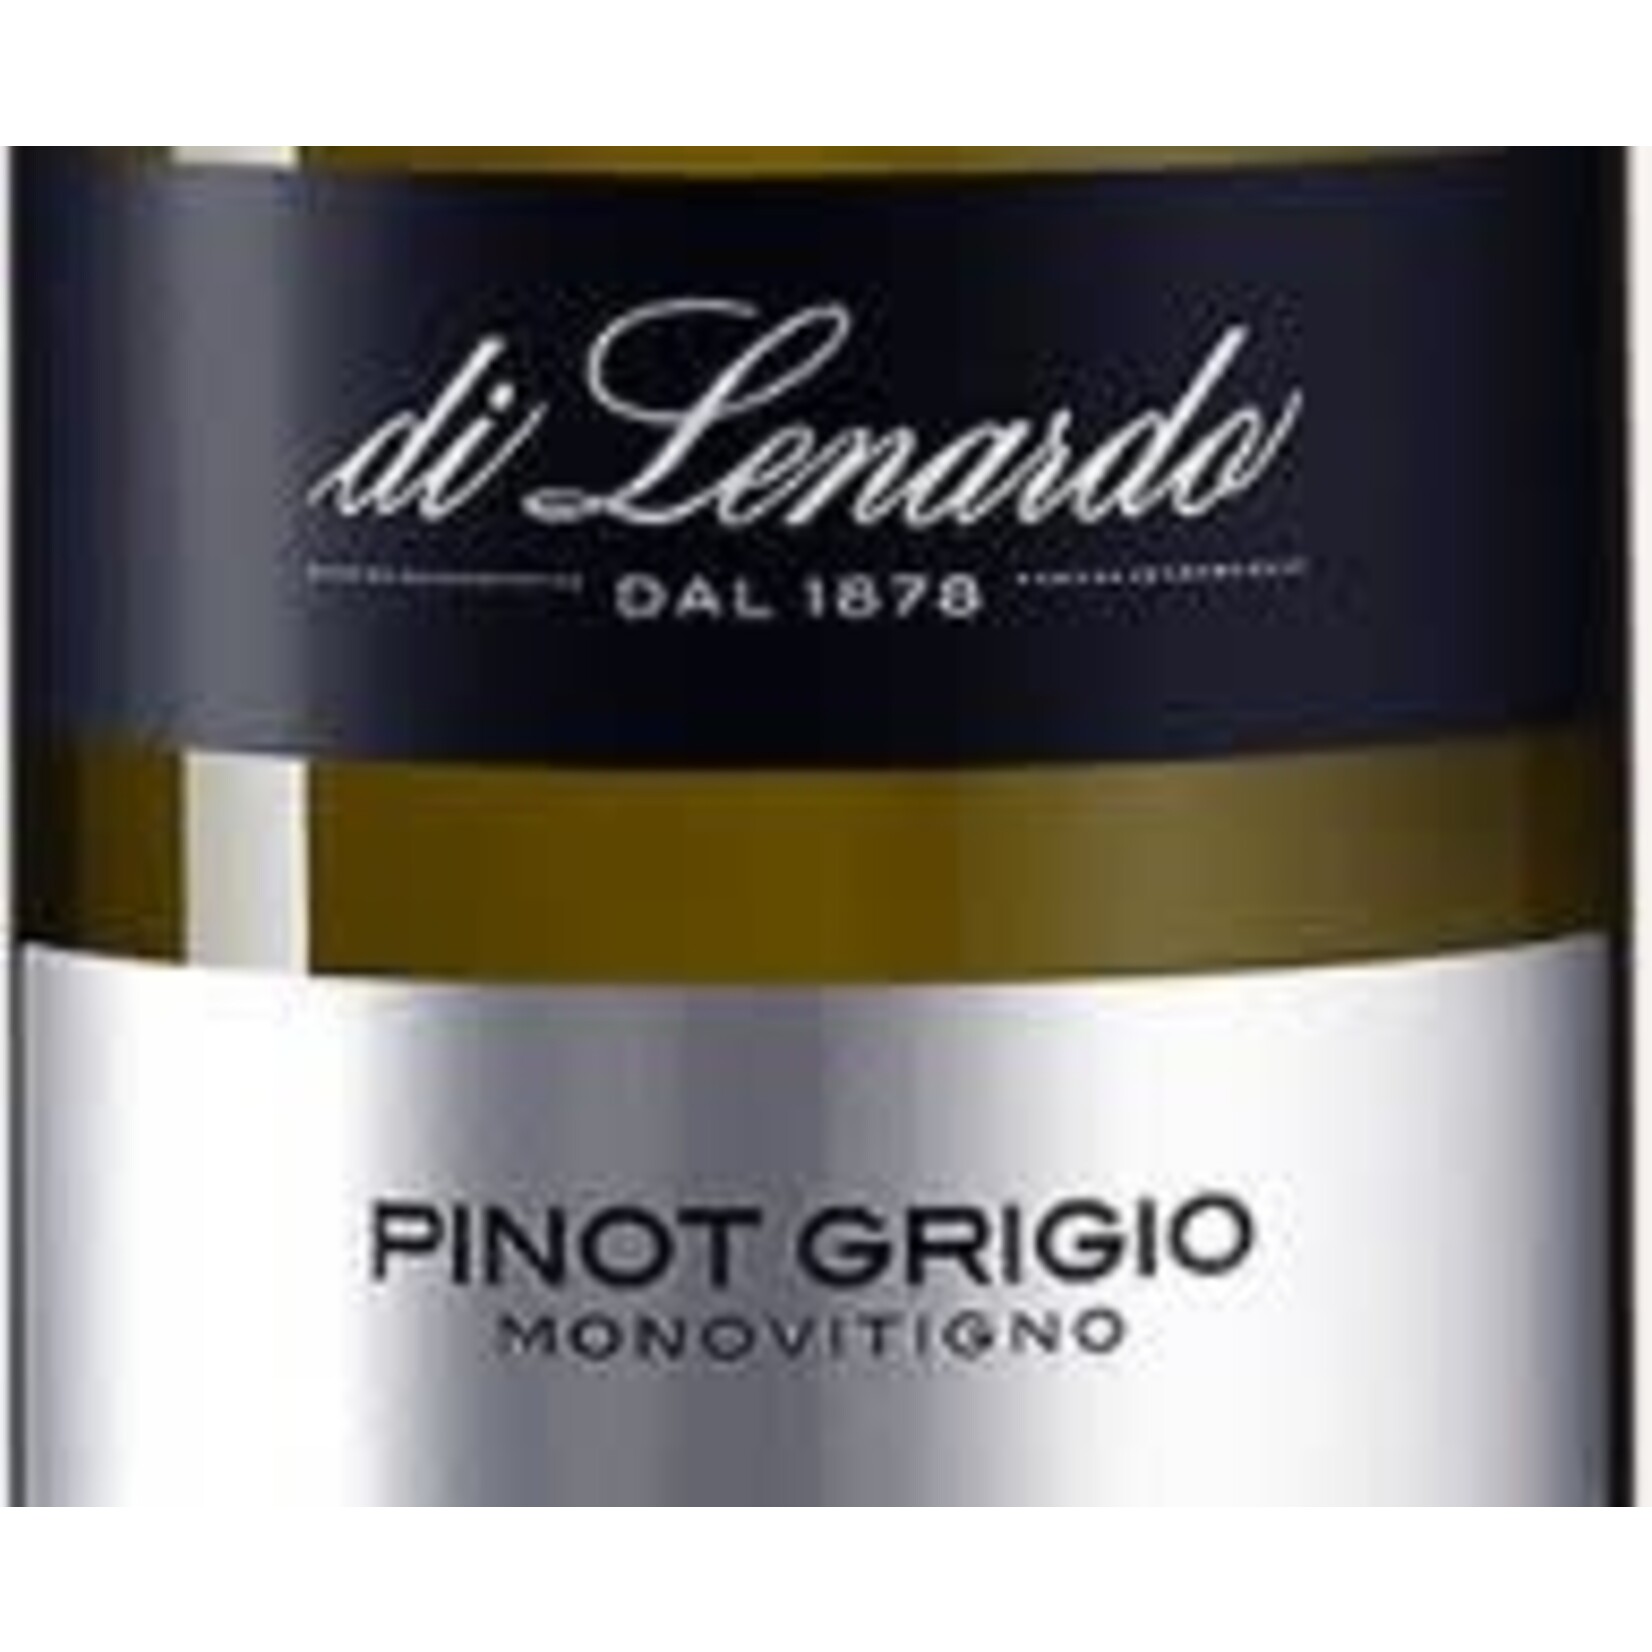 di Lenardo dal 1878 Pinot Grigio Monovitigno Friuli  Italy